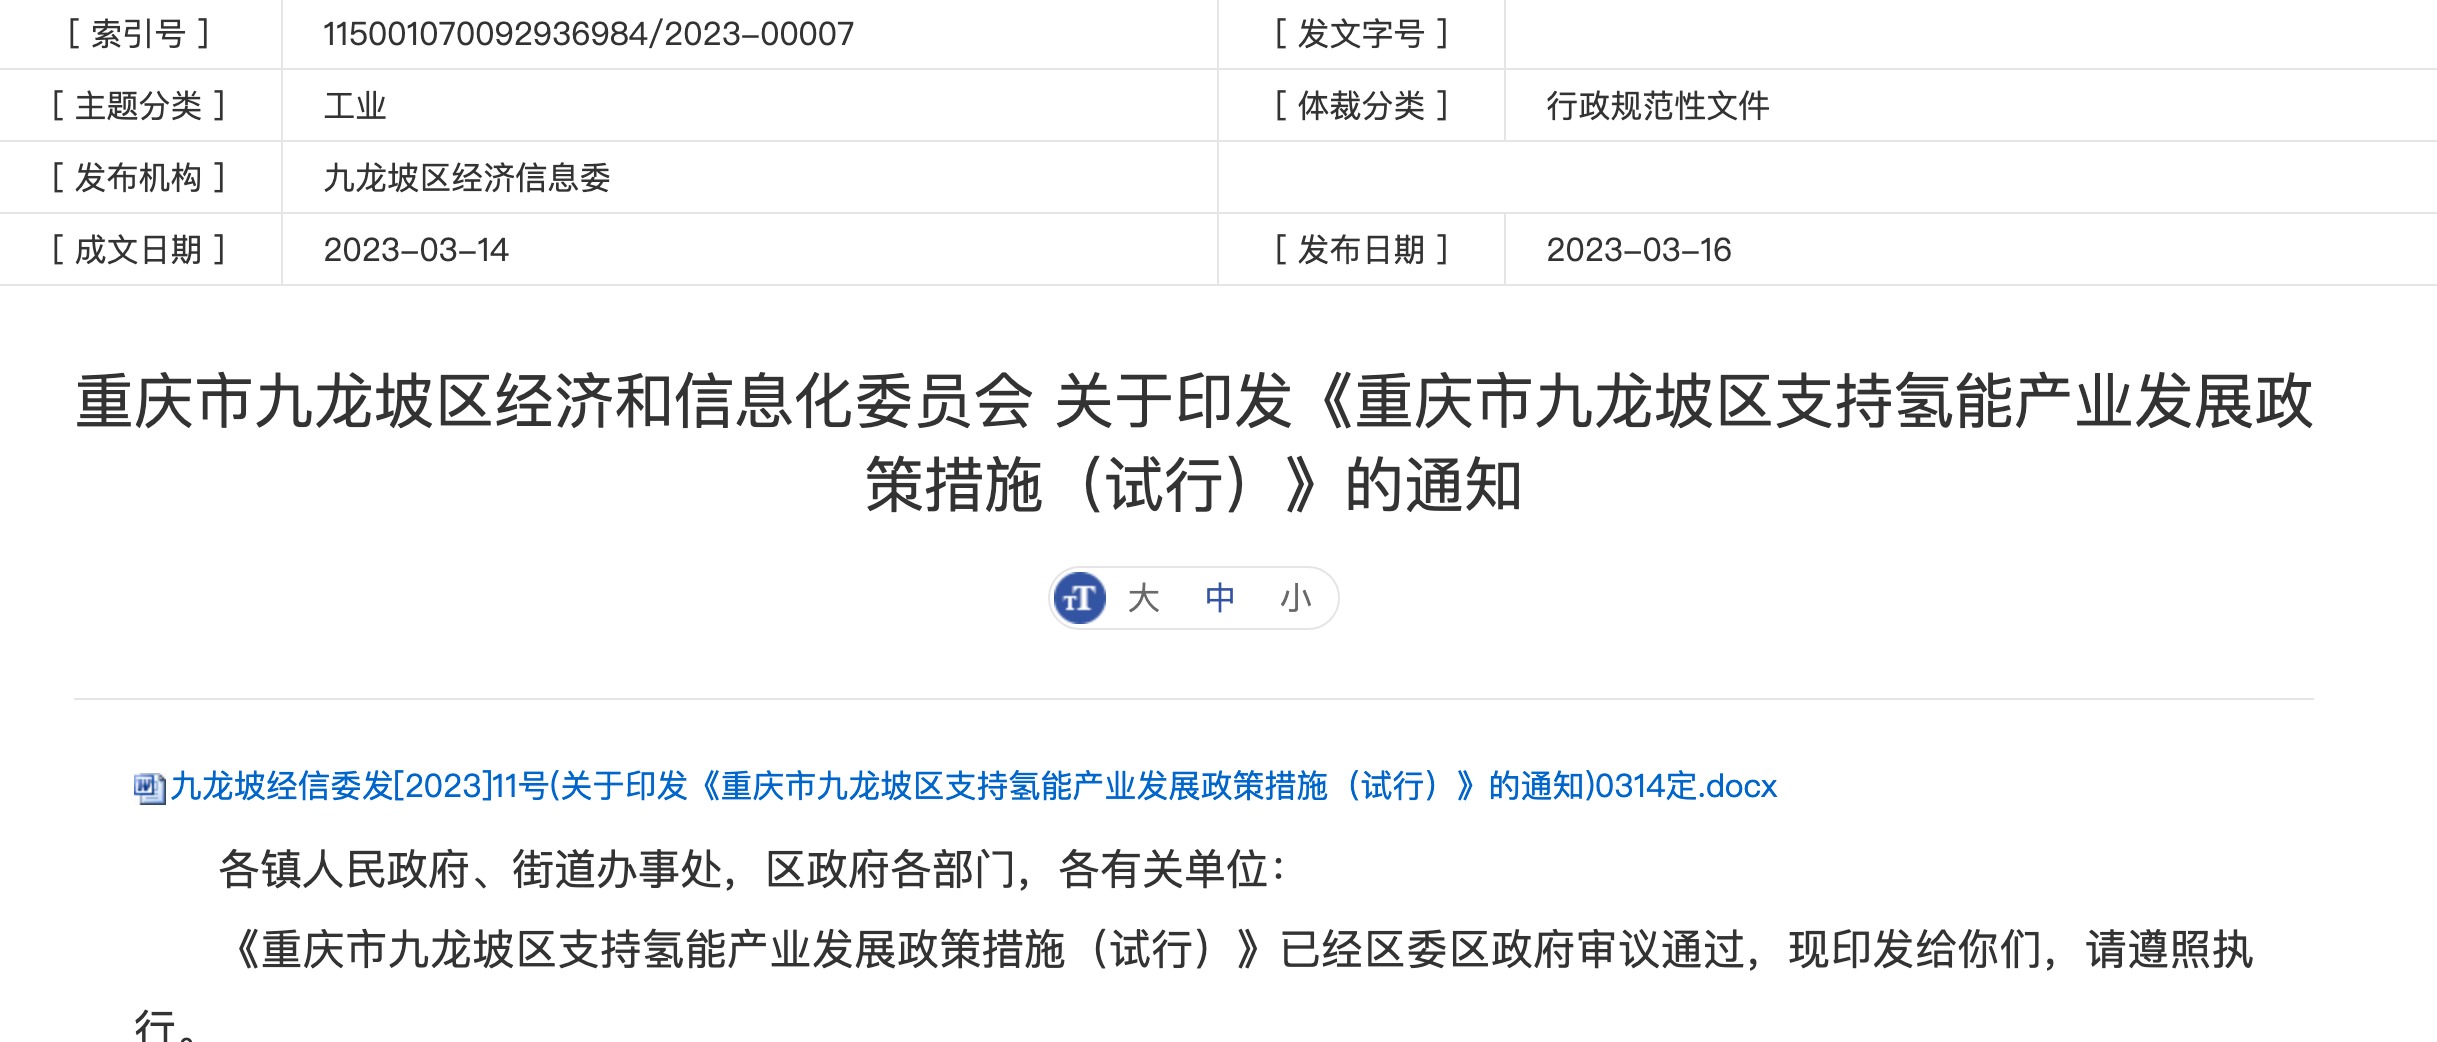 重庆市九龙坡区支持氢能产业发展政策措施（试行）.jpeg